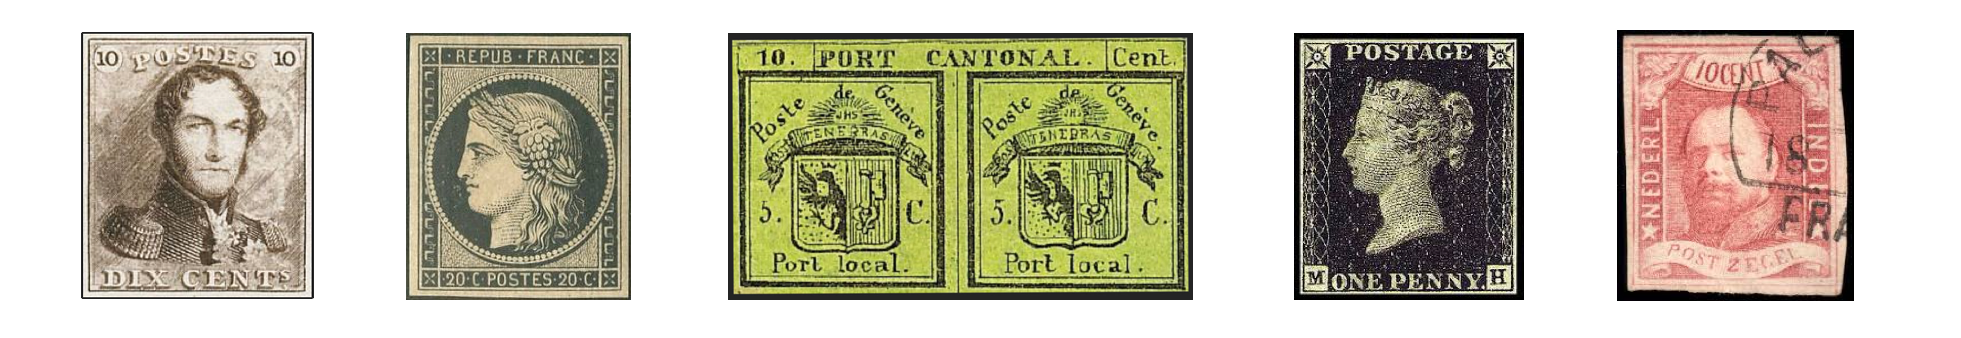 cancelled CACHET ROND timbre CLASSIQUE 119d GC oblitéré MERSON FRANCE 1900 